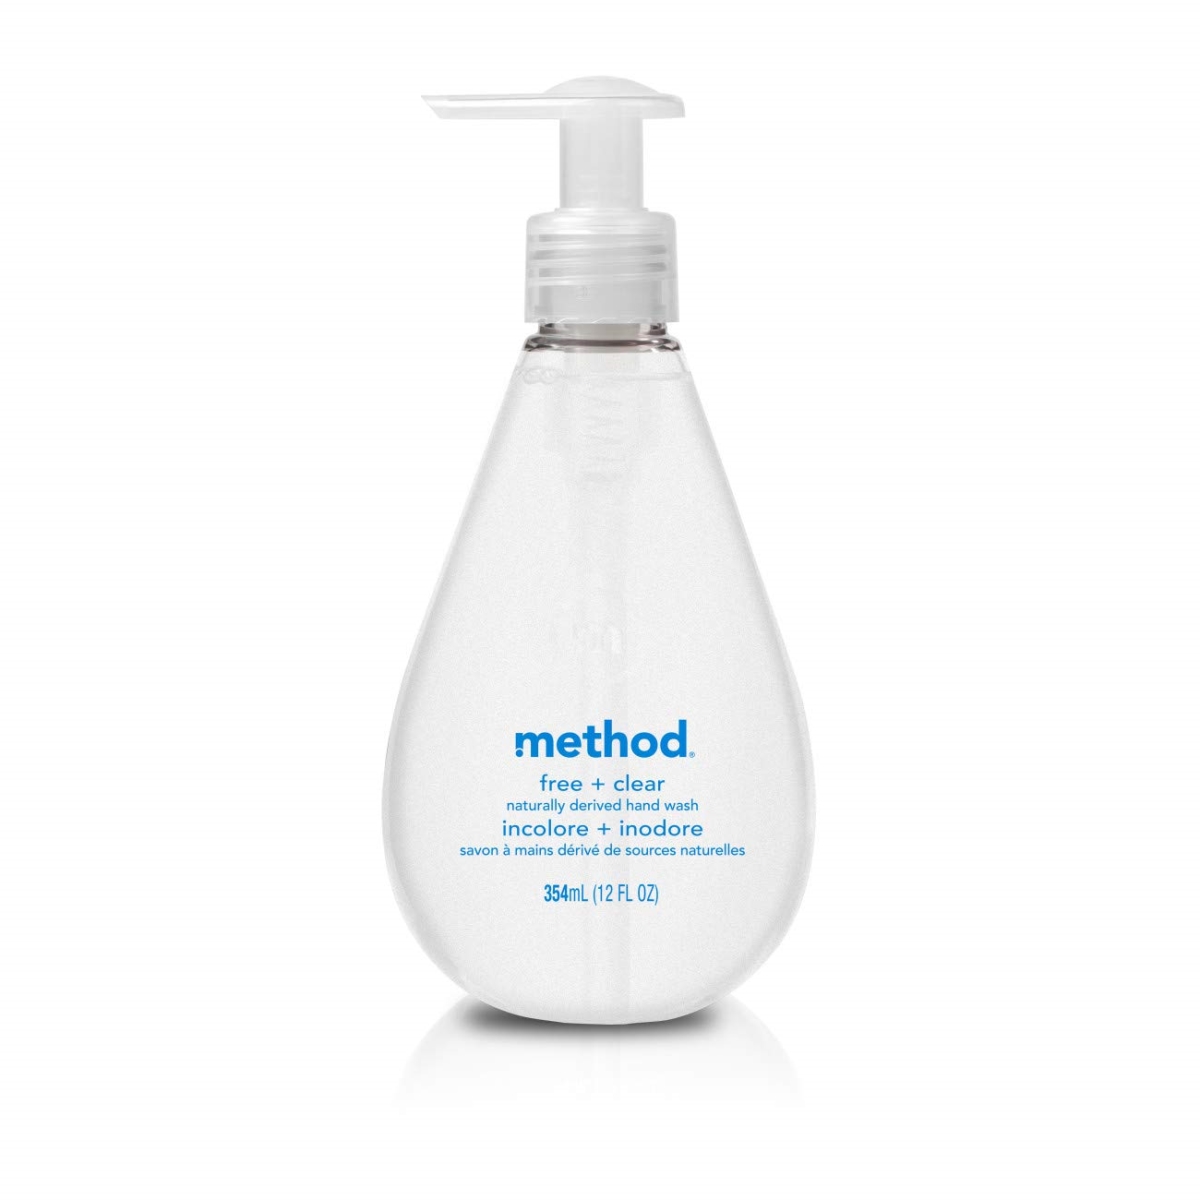 Method Products 1943 12 Fl Oz Gel Hand Wash Refill, Fragrance-free - Clear